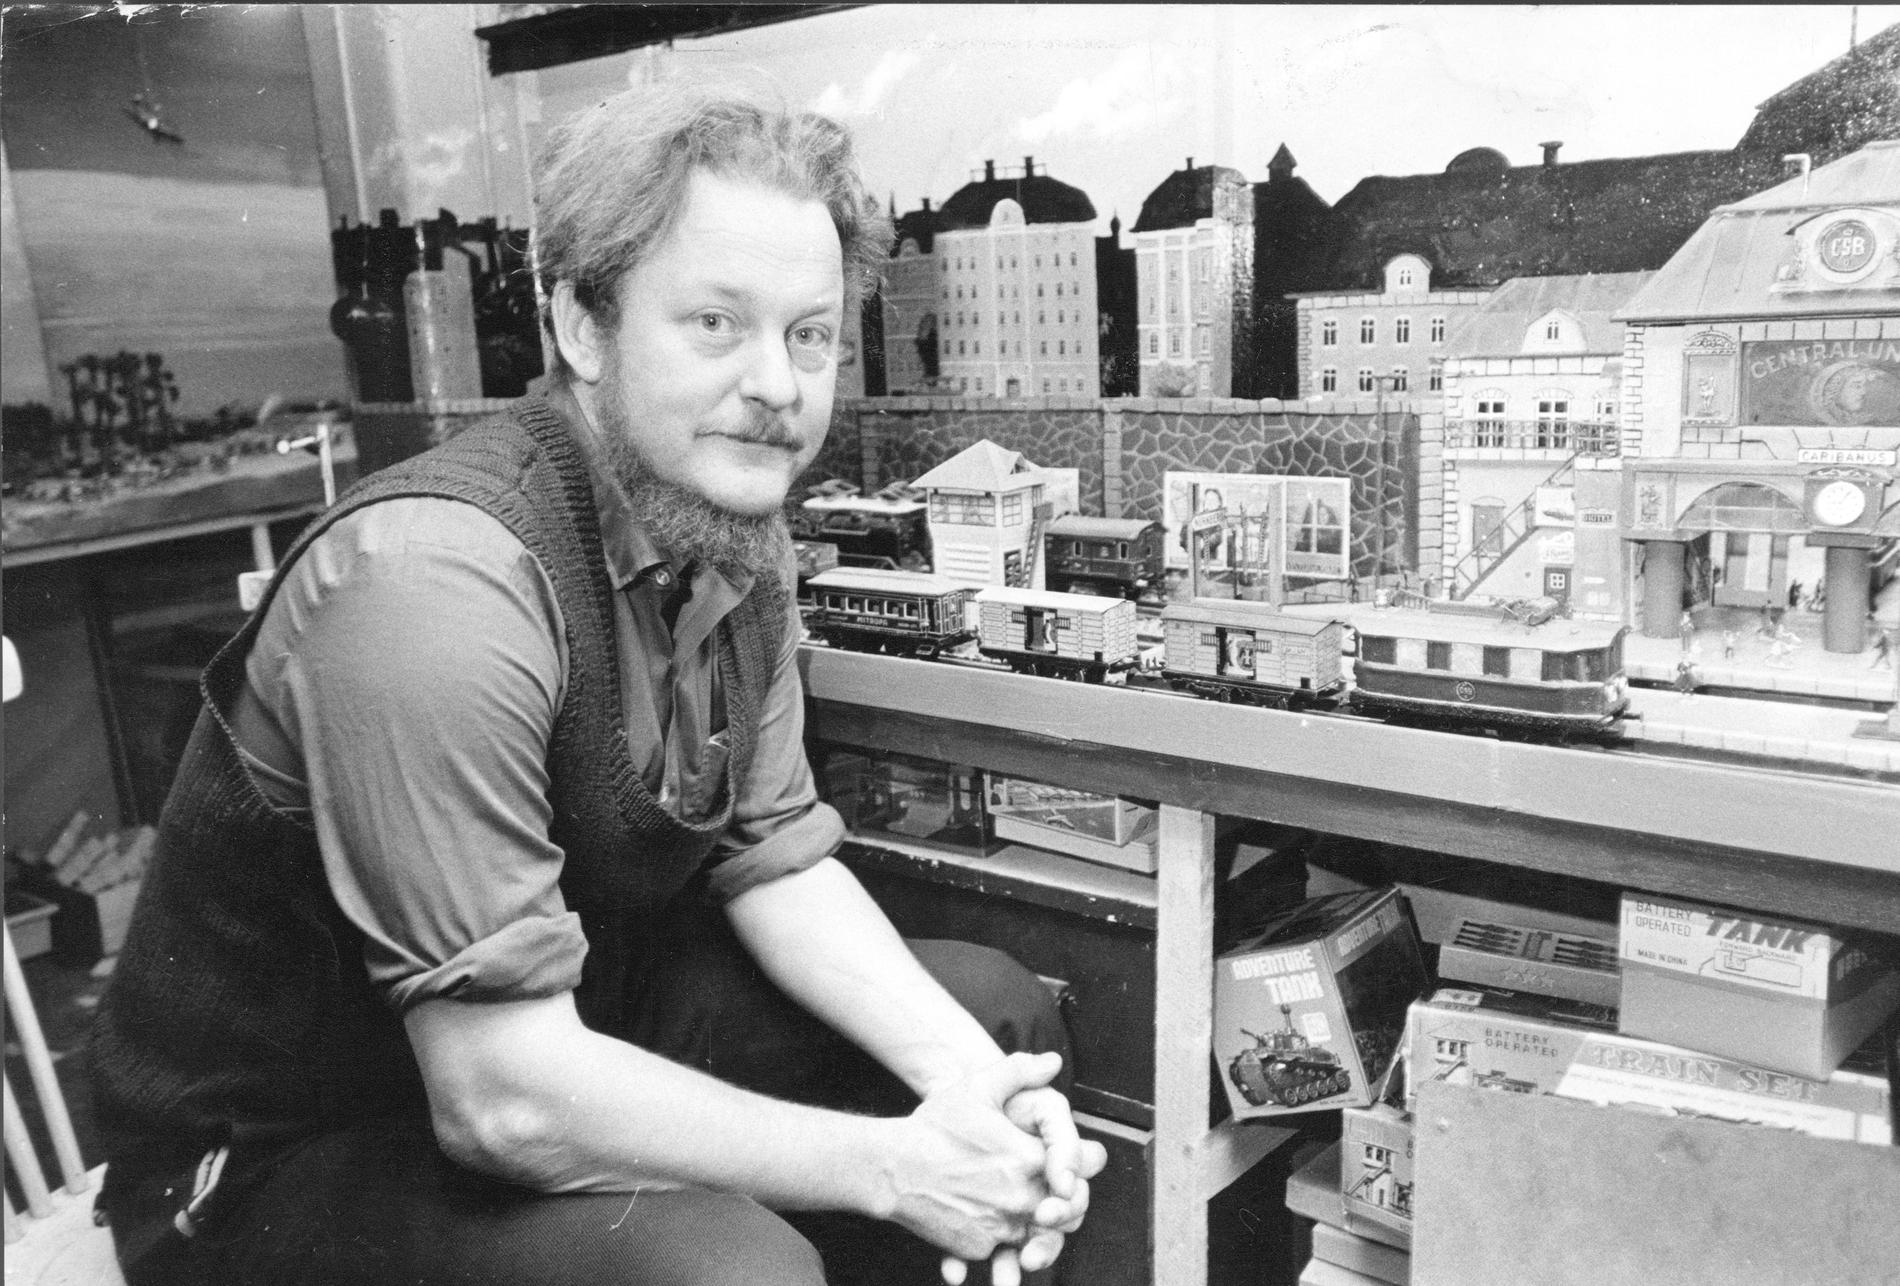 Peter dahl med sin modelljärnväg 1975. 